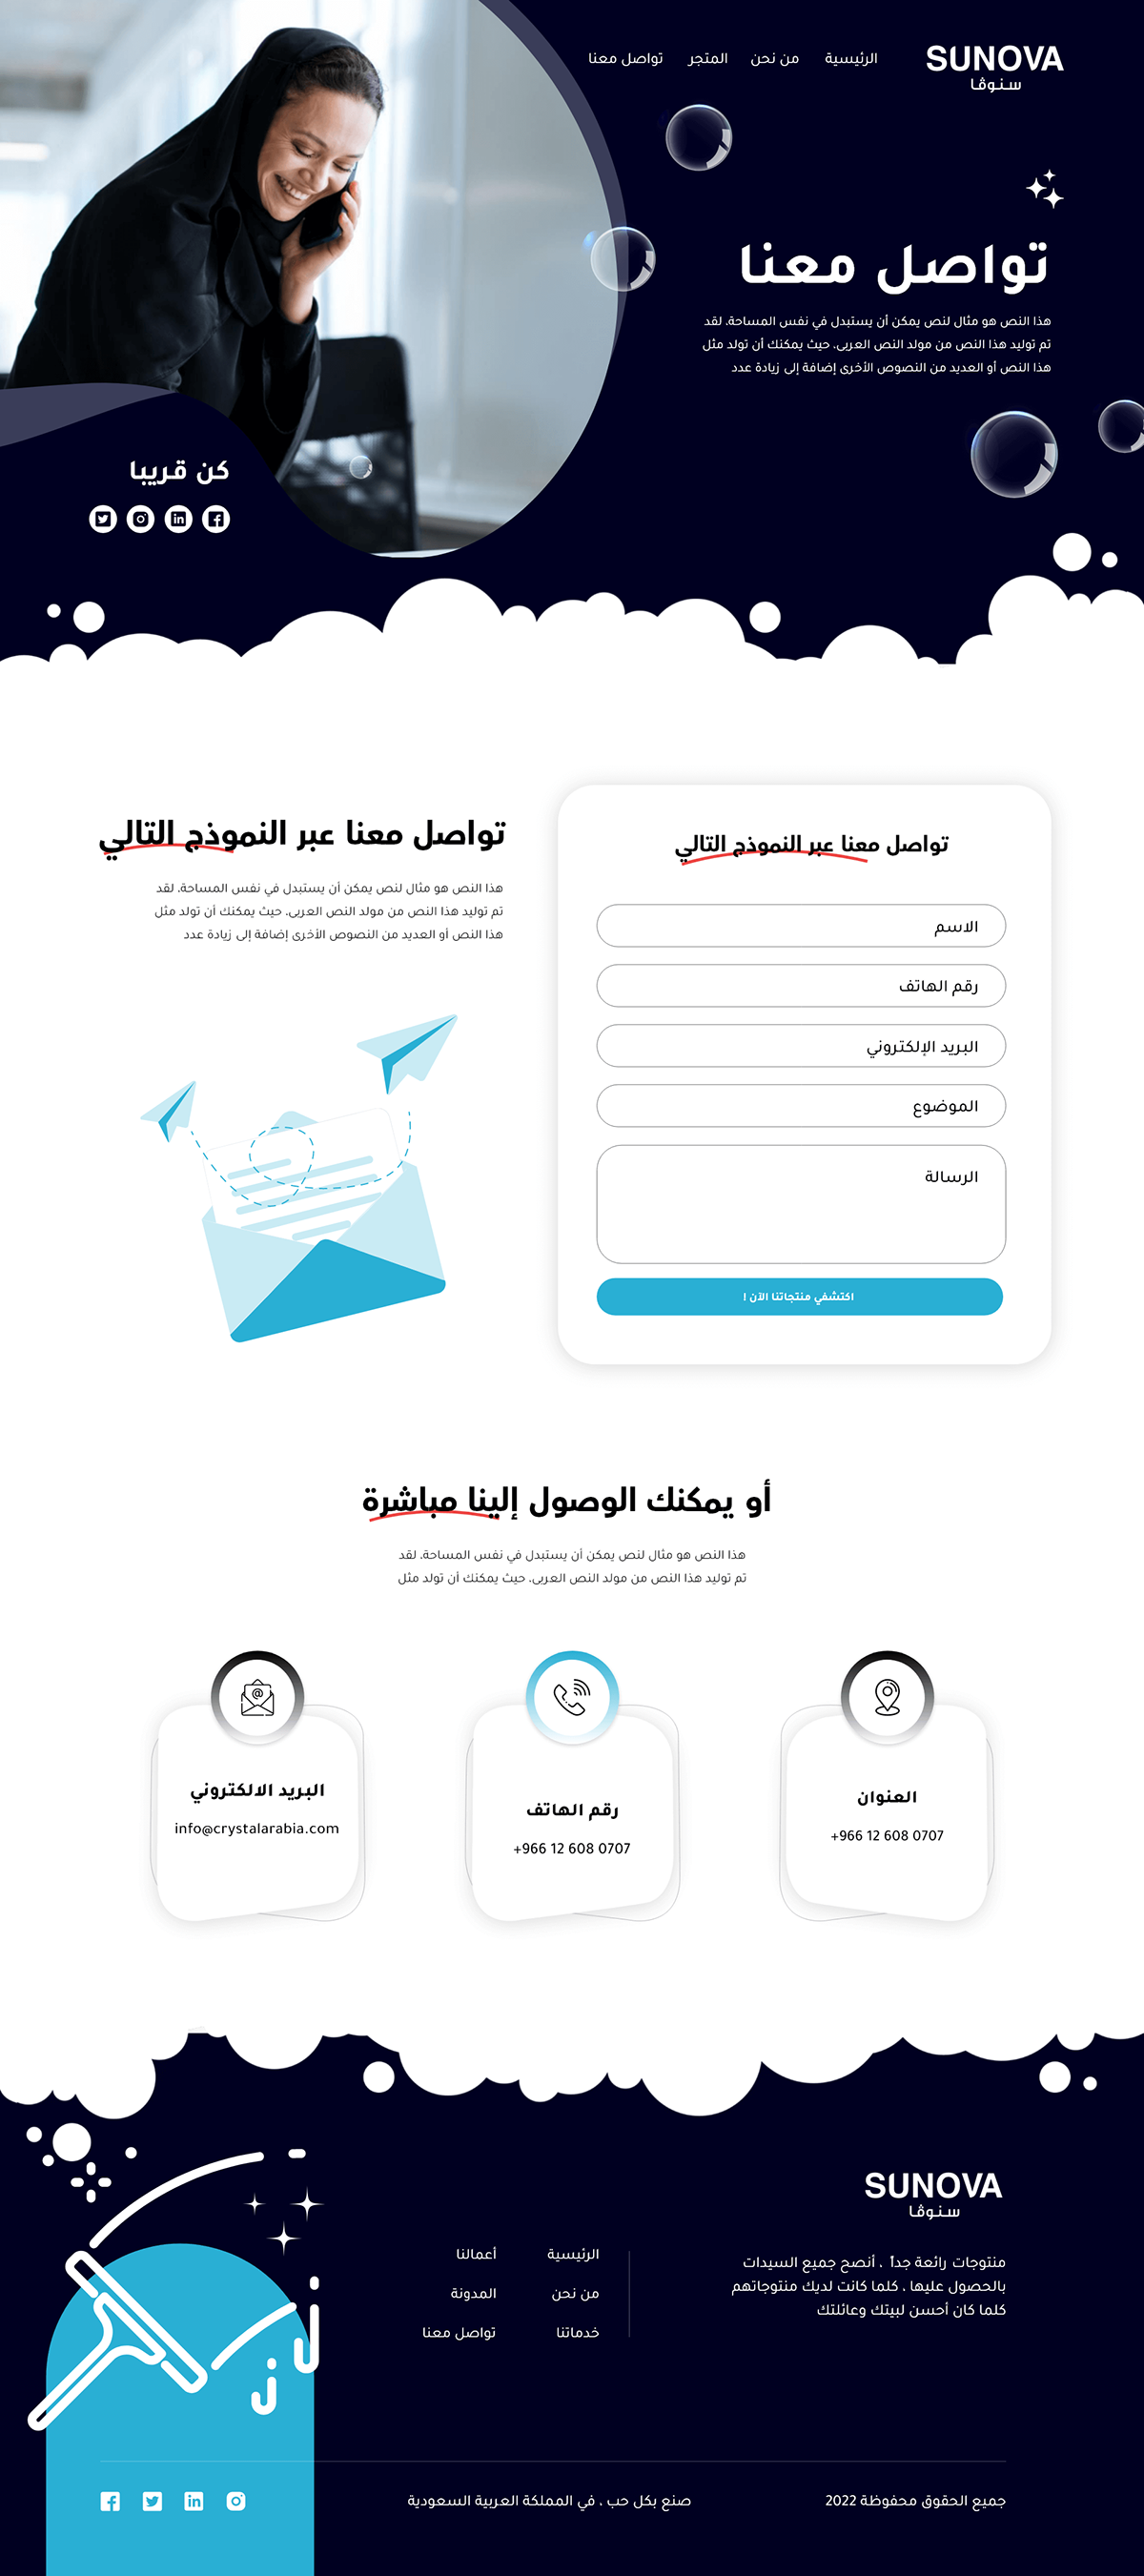 افضل شركة تصميم مواقع تصميم تصميم مواقع تصميم مواقع السعودية تصميم مواقع الكترونية تصميم موقع تصميم موقع الكتروني تصميم موقع شركة شركات تصميم مواقع موقع الكتروني